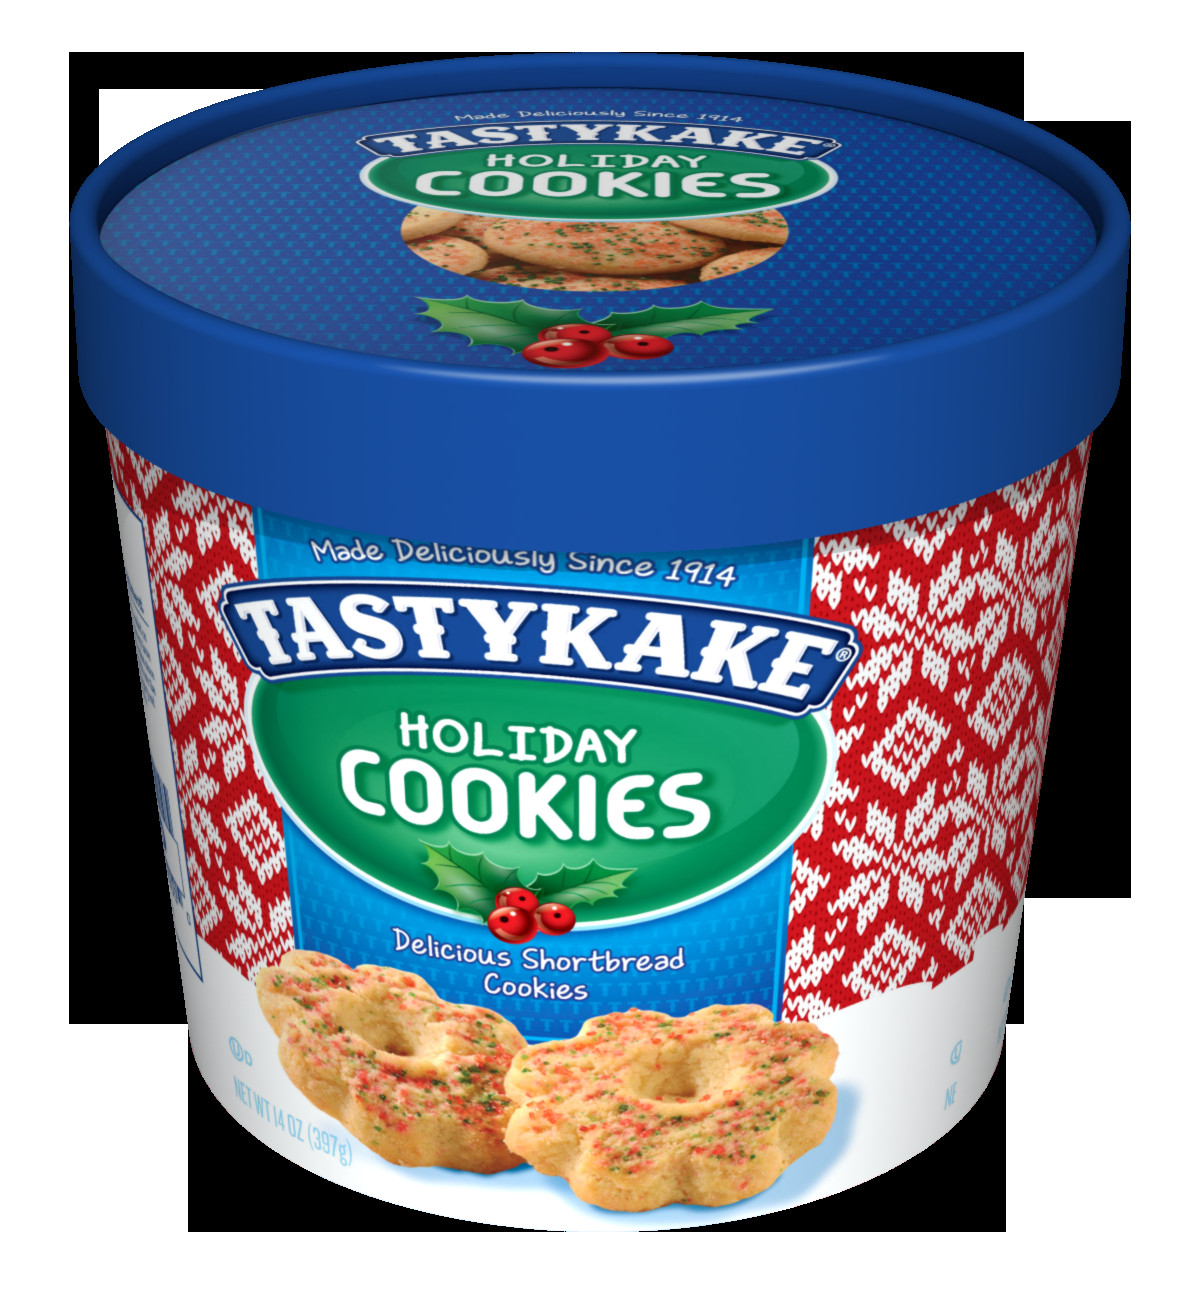 Tastykake Christmas Cookies
 Special Holiday Inspired Treats